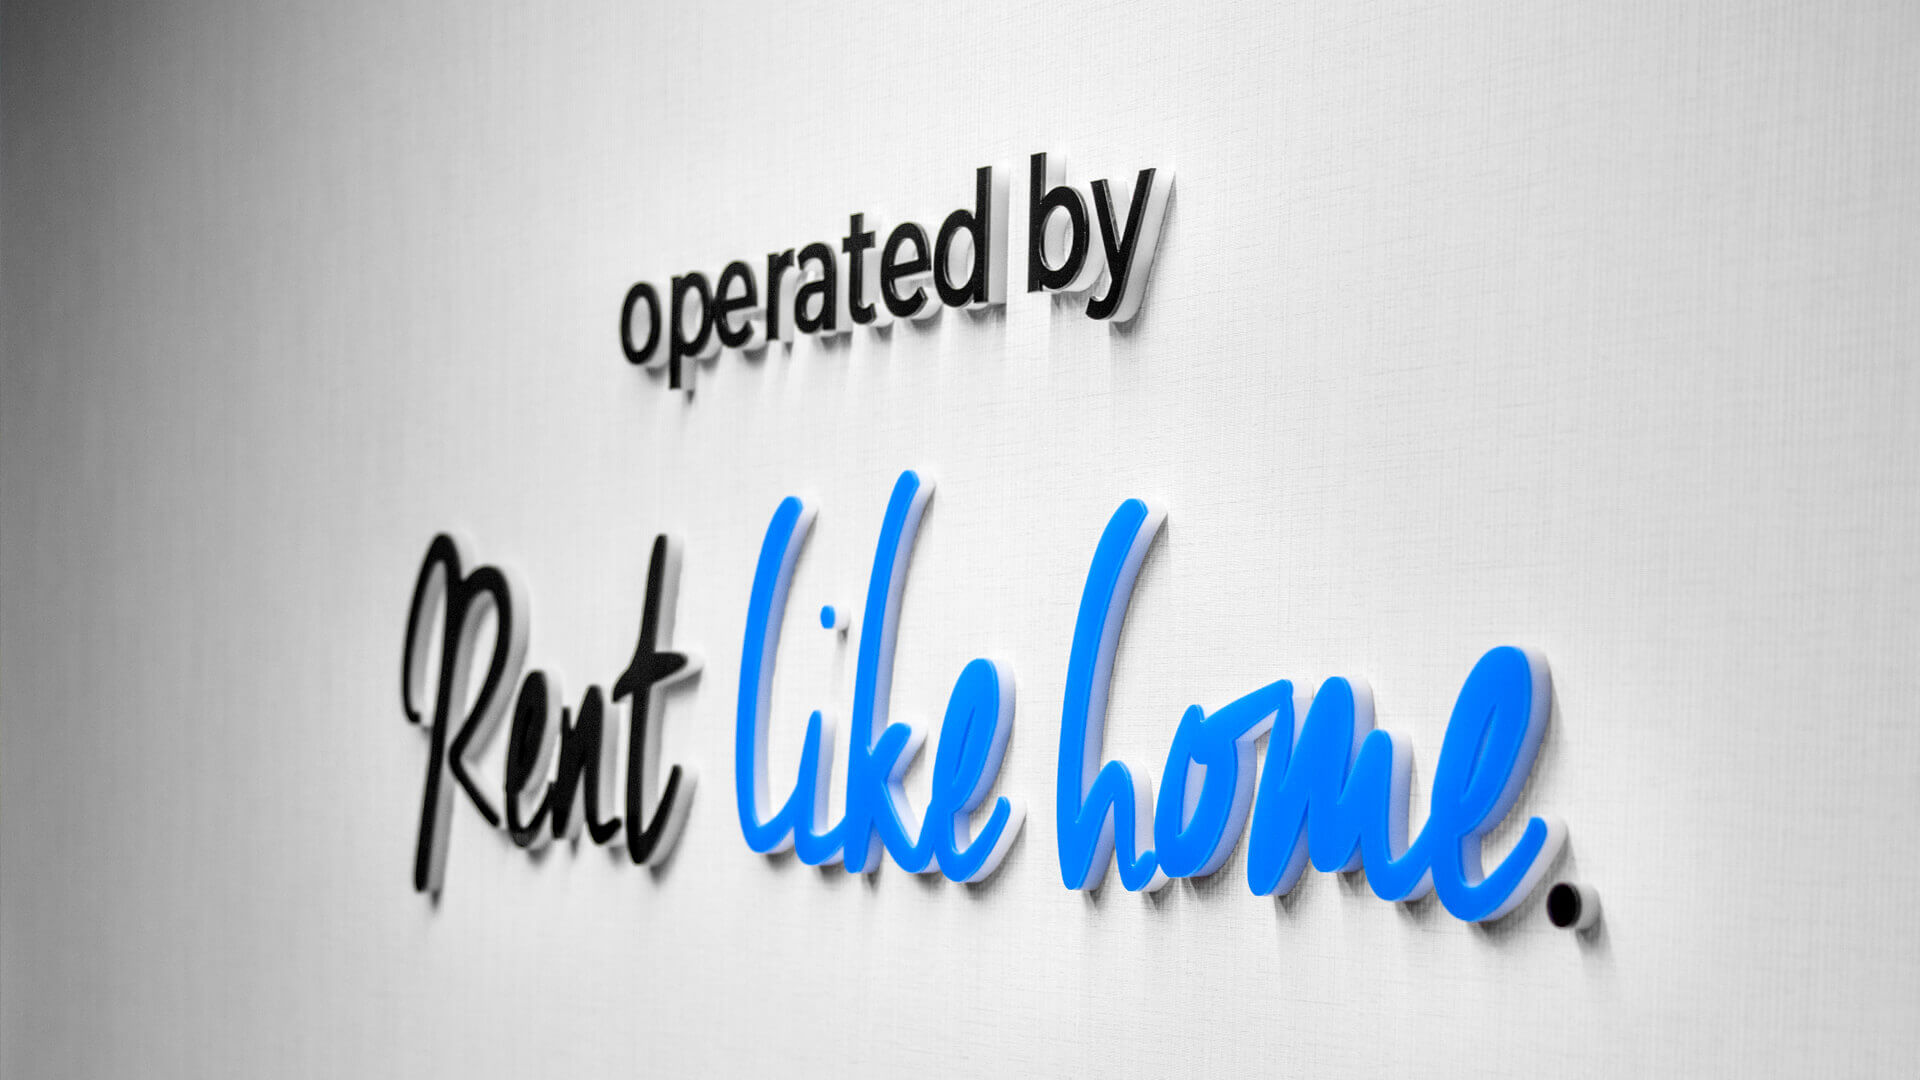 rent like home apartamenty deo Raddison - rent-like-home-litery-przestrzenne-litery-na-scianie-za-recepcja-w-biurowcu-deo-apartments-litery-niebieskie-litery-na-zamowienie-logo-firmowe-litery-naklejone-na-scianie-gdansk- (8).jpg